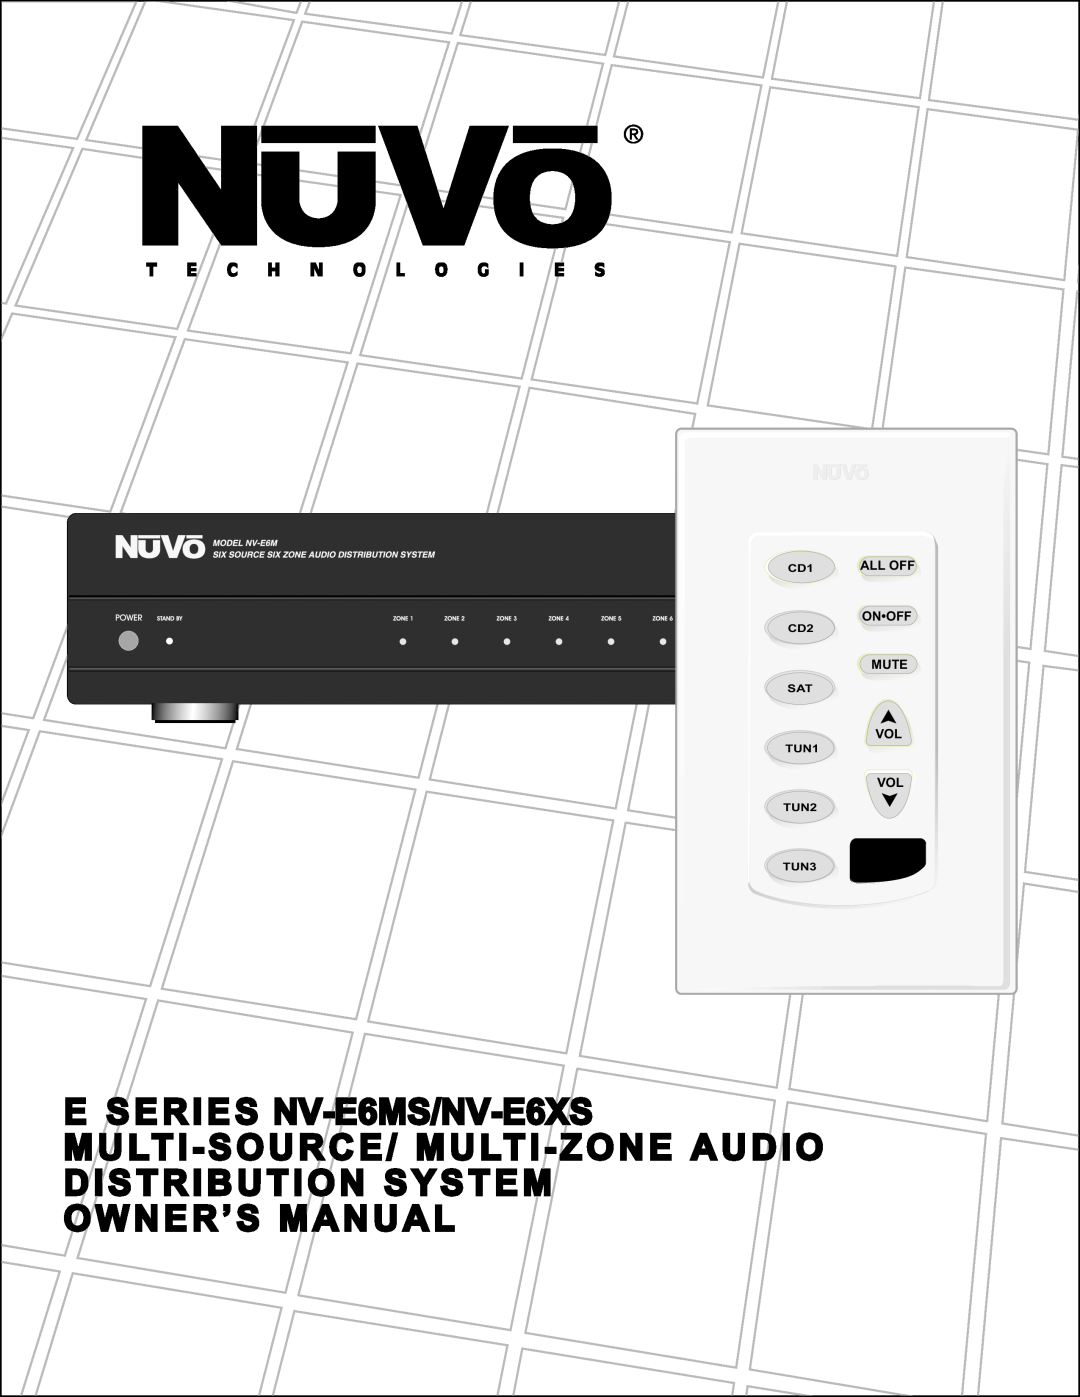 Nuvo manual E SERIES NV-E6MS/NV-E6XS, Onoff, Mute, All Off, TUN1, TUN2 TUN3 